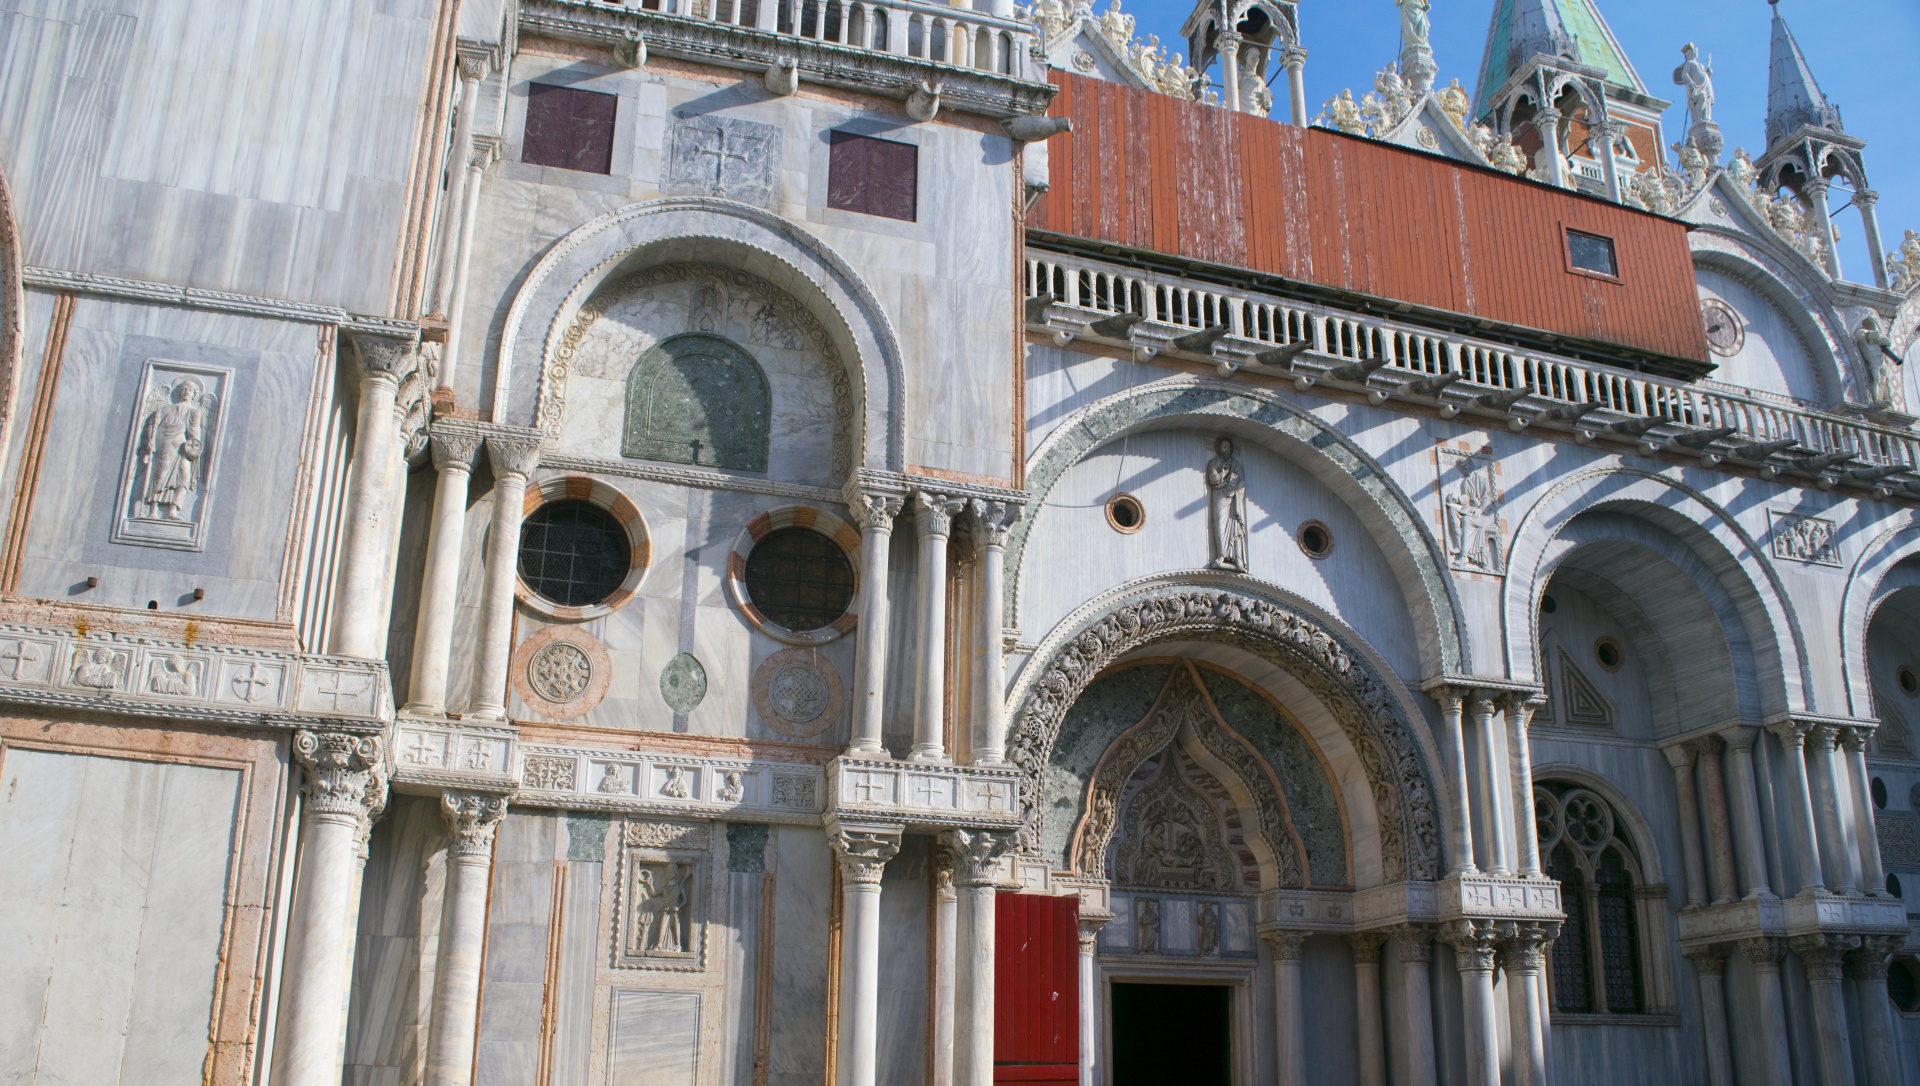 Venice Image 1135